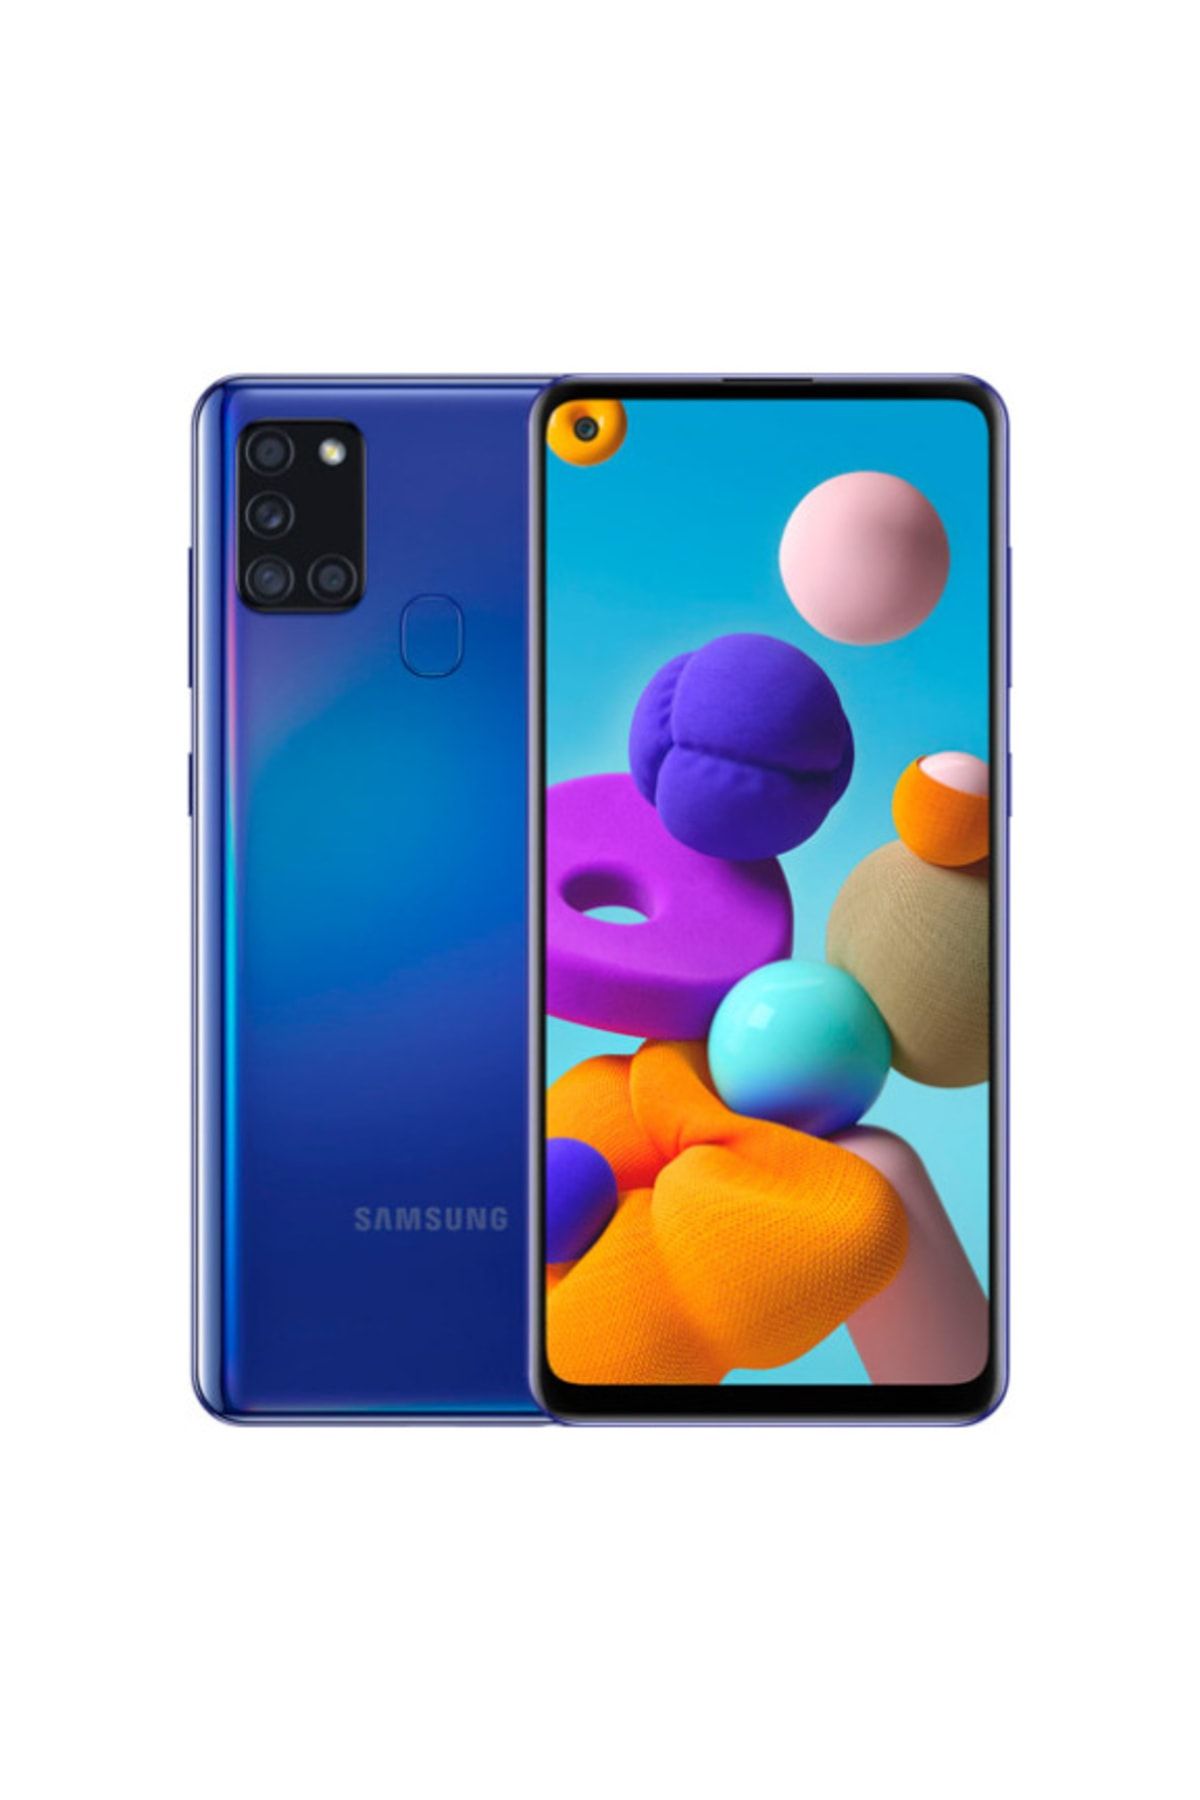 Samsung Yenilenmiş Galaxy A21s 64 Gb Mavi B Grade